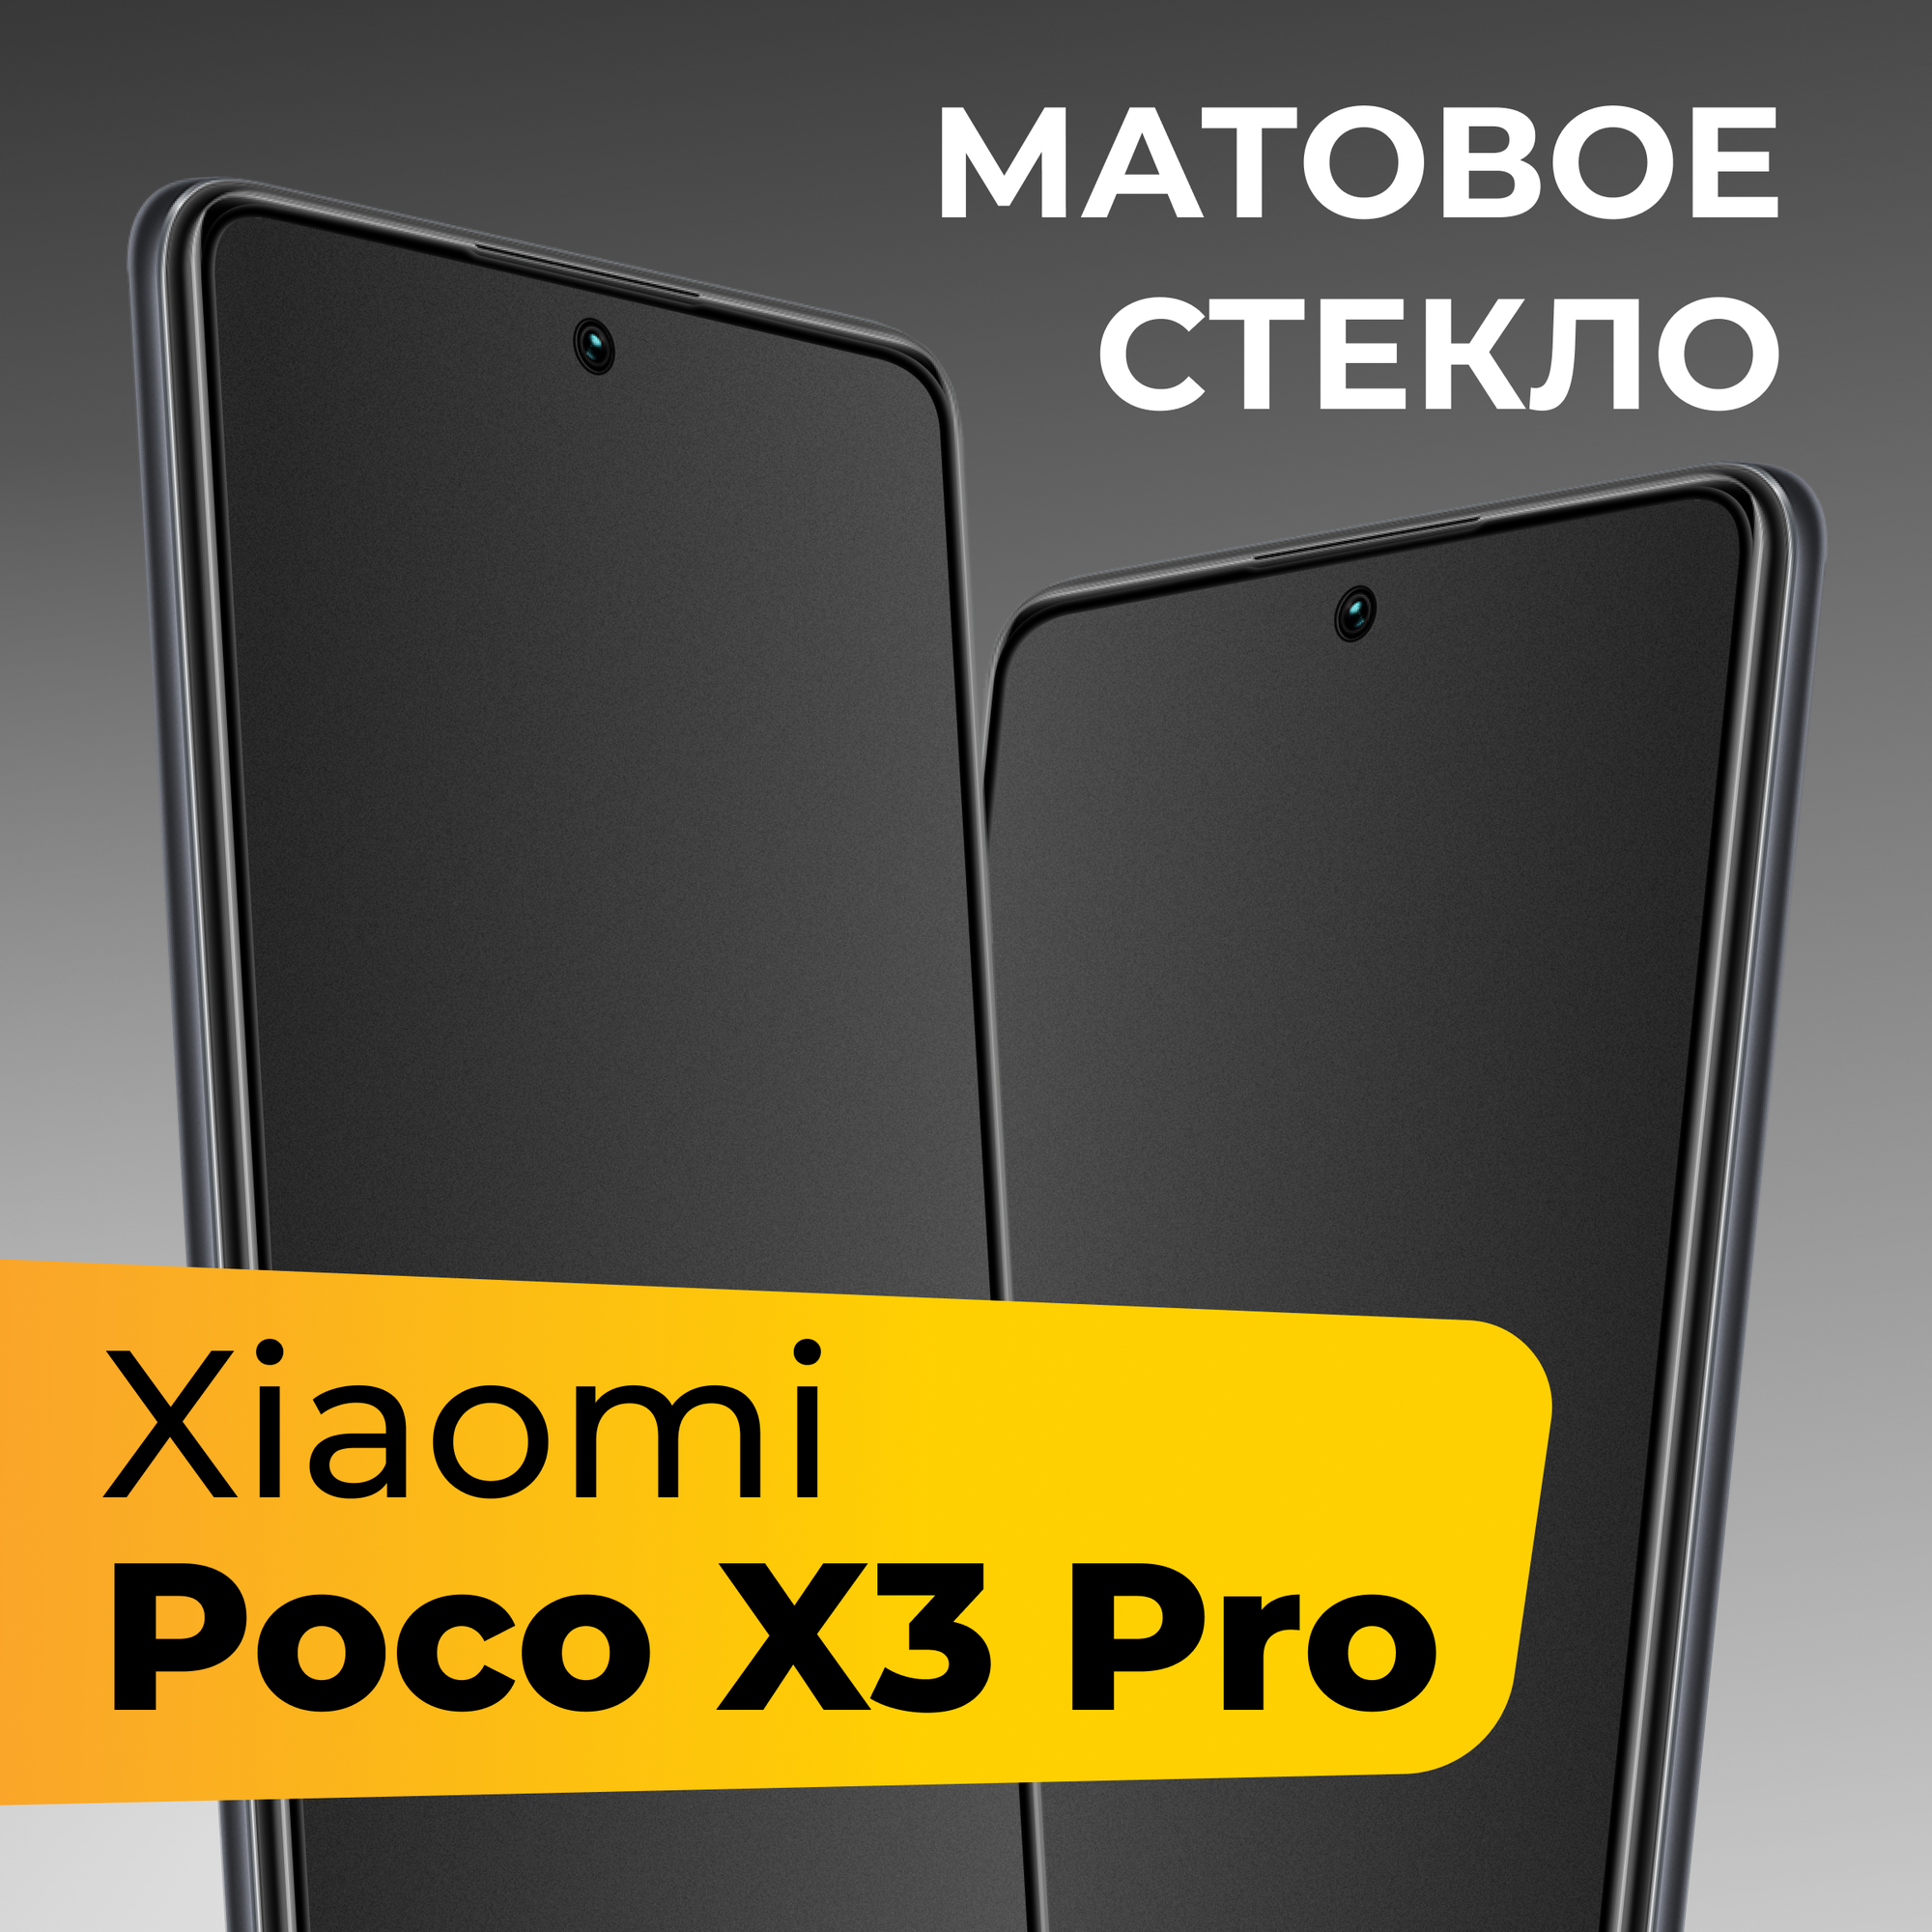 Матовое защитное стекло для телефона Xiaomi Poco X3 Pro / Противоударное закаленное стекло на весь экран для смартфона Сяоми Поко Х3 Про